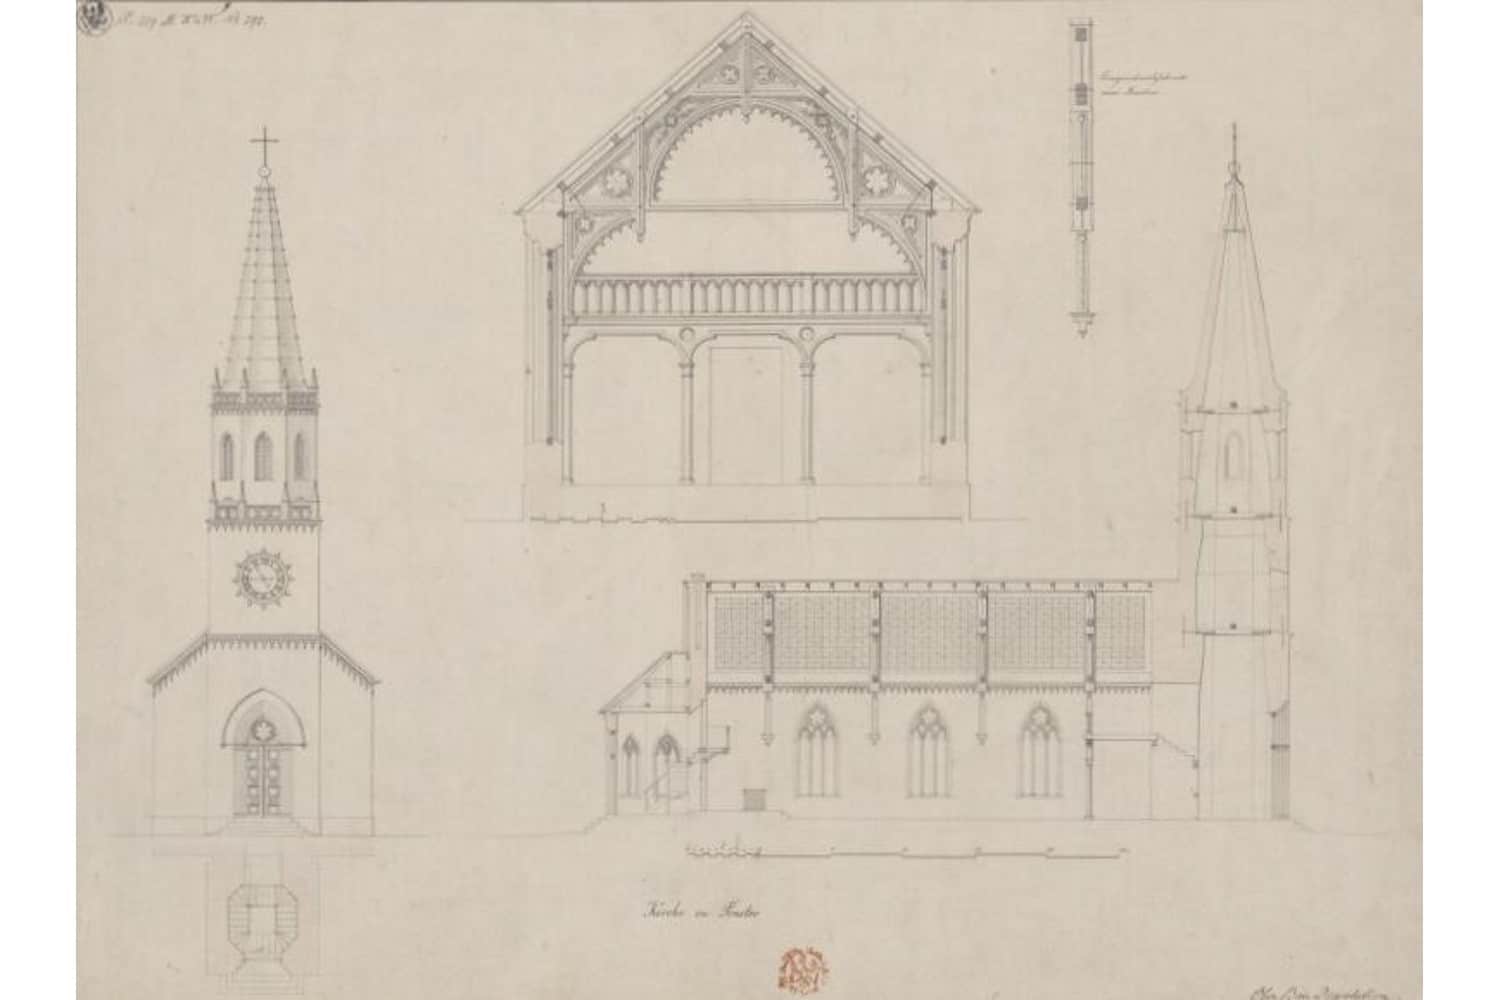 Entwurf für die Kirche Prester von Karl Friedrich Schinkel aus dem Jahr 1831. Quelle: https://commons.wikimedia.org/w/index.php?curid=112055144